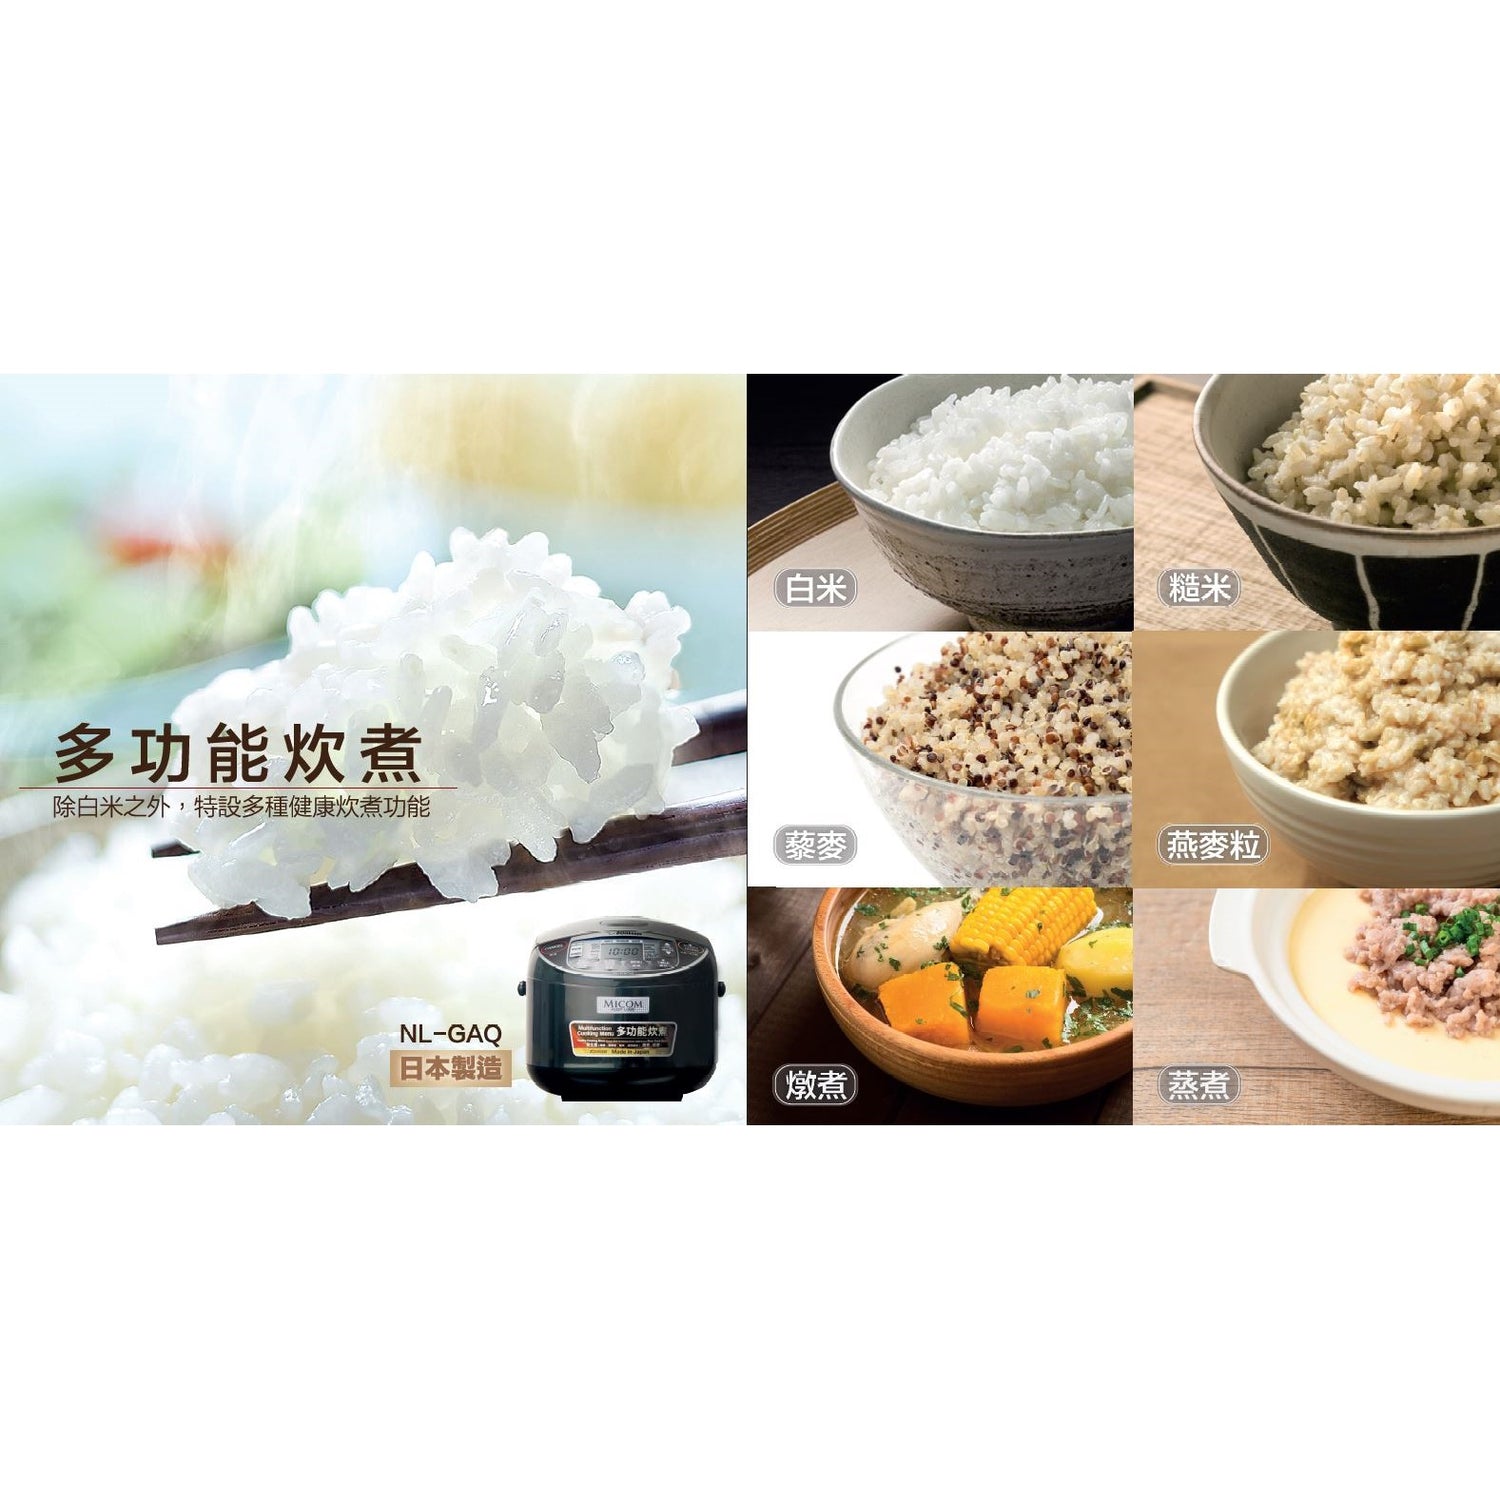 Zojirushi Rice Cooker NL-GAQ10/18 (Made in Japan)